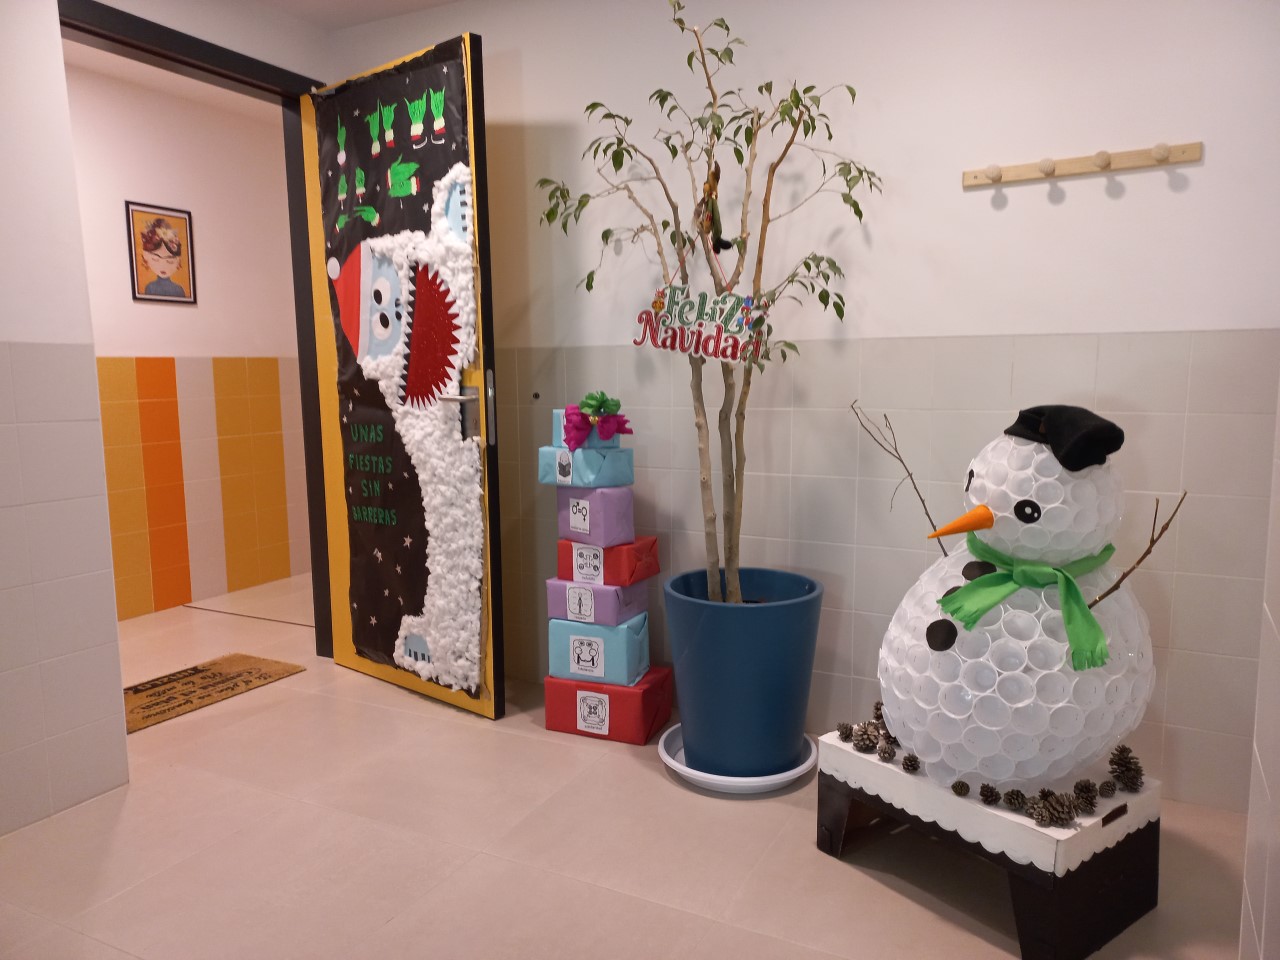 Una donación de puertas decoradas con motivos navideños lleva alegría a la Residencia “Els Estels” de Alicante